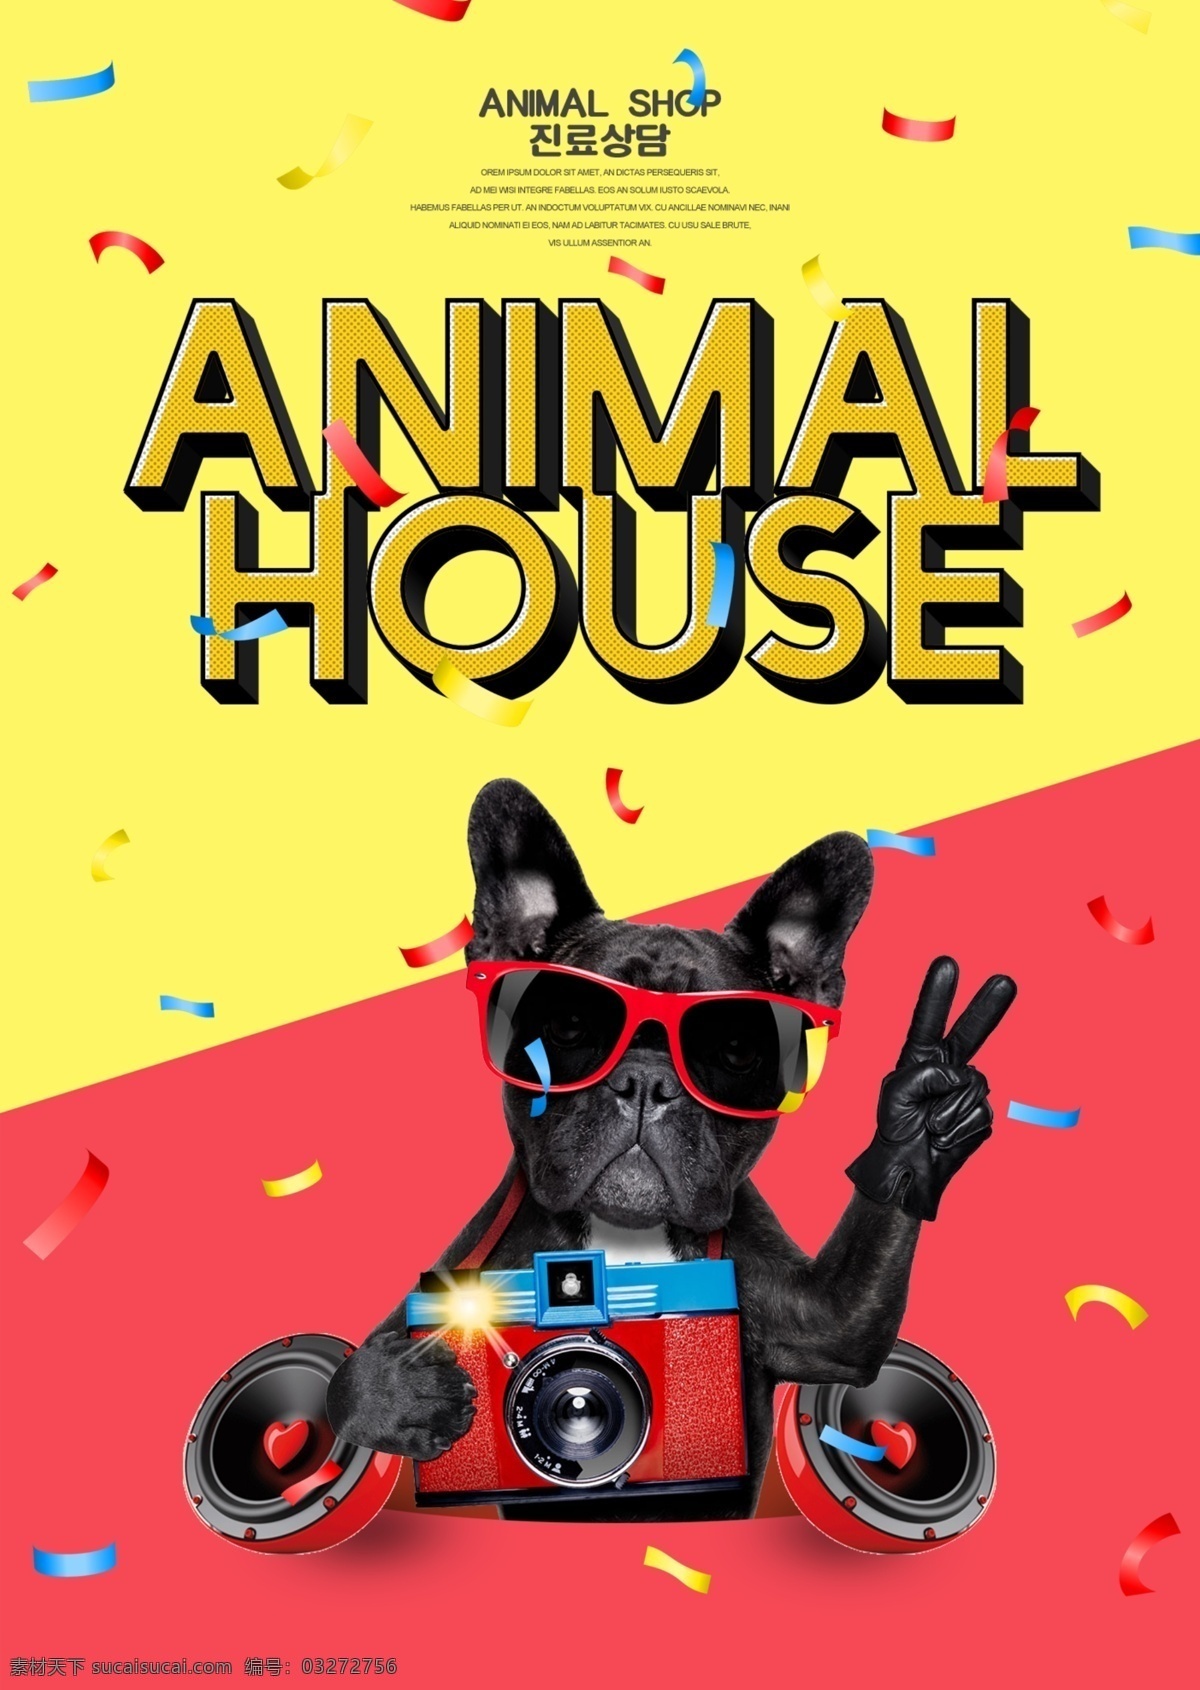 现代 时尚 韩国 宠物 宣传海报 装饰 海报 简单 狗 动物 大韩民国 可爱 动画片